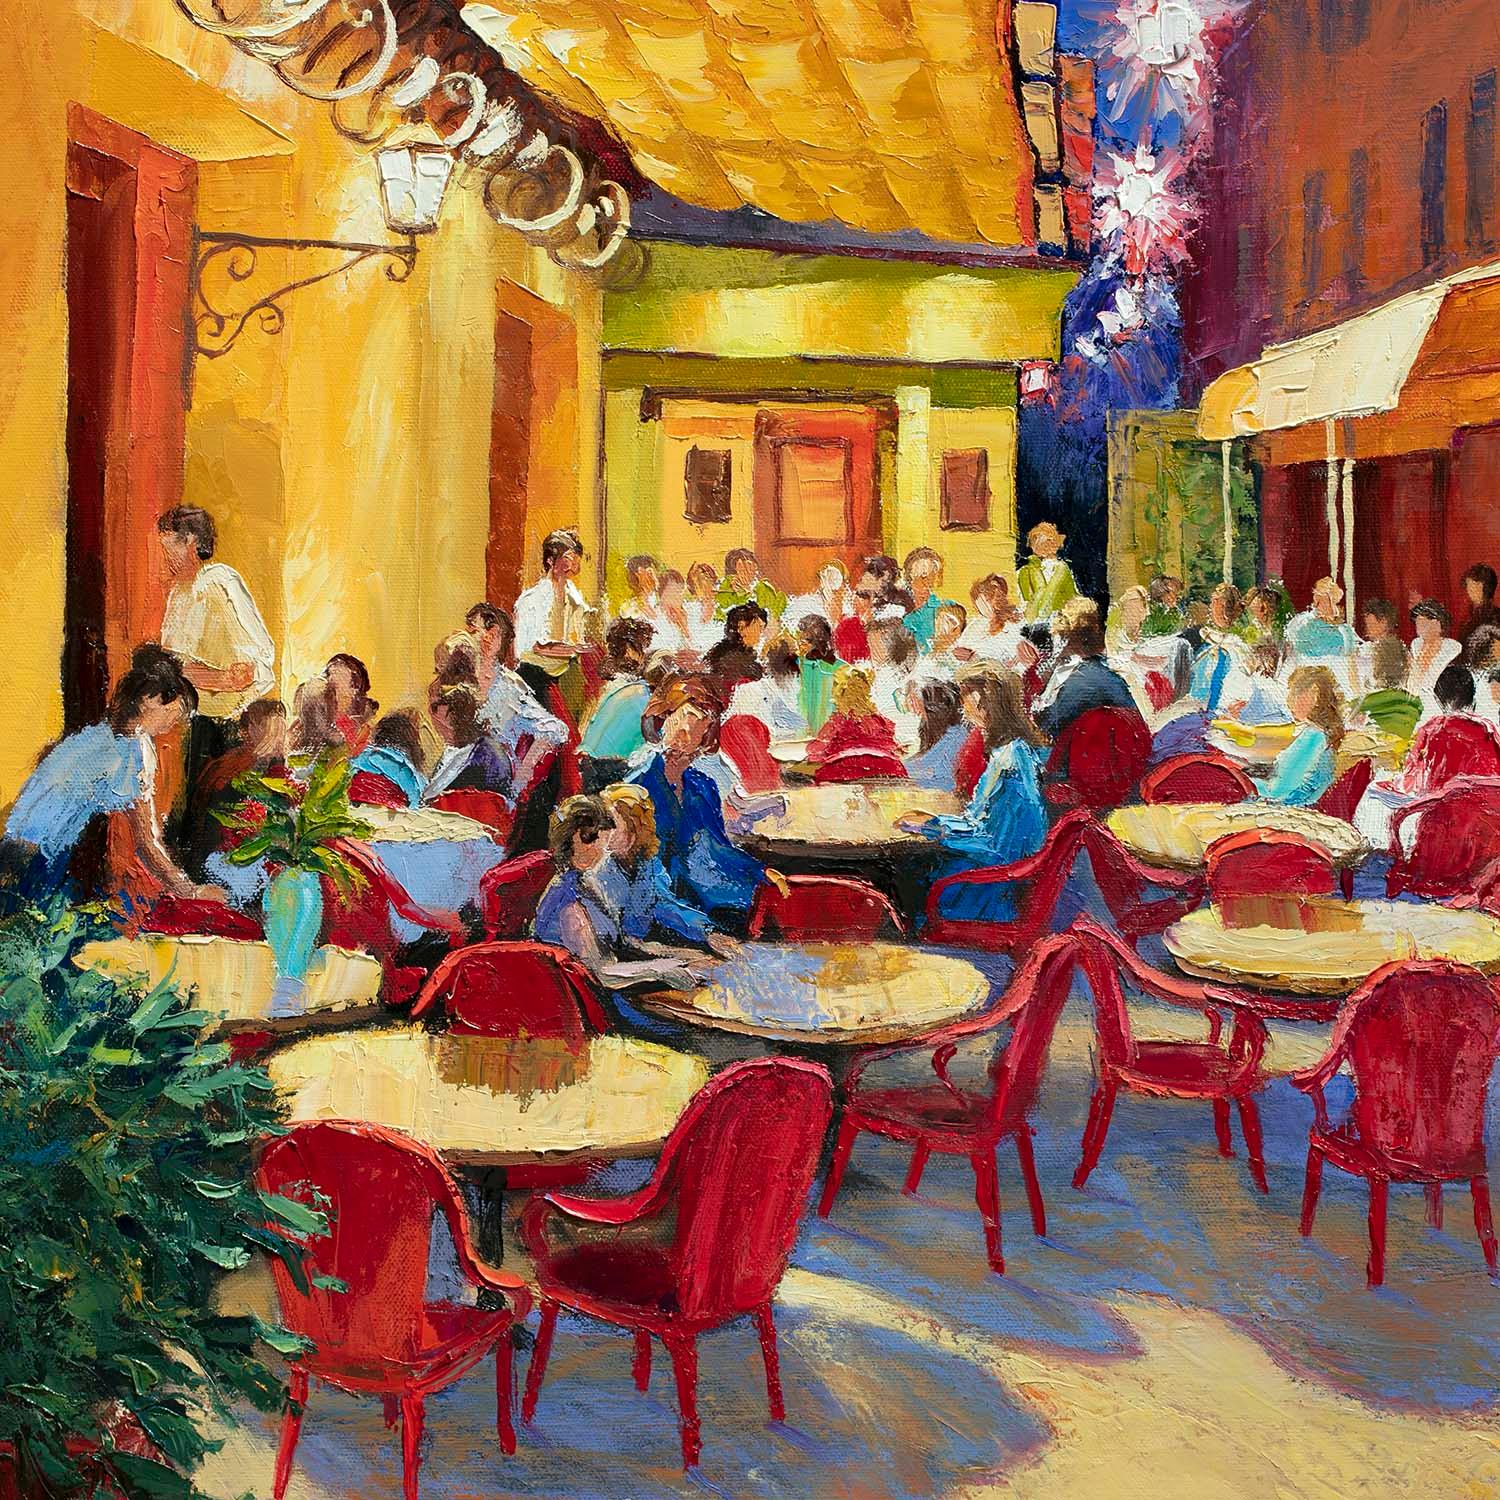 <p>Kommentare des KÃ?nstlers<br>Als Teil seiner Stadtbildserie malt der KÃ?nstler Stanislav Sidorov eine lebhafte Darstellung des CafÃ© Van Gogh in Arles, Frankreich. Das warme und einladende Licht des Cafés fällt auf die Tische und die